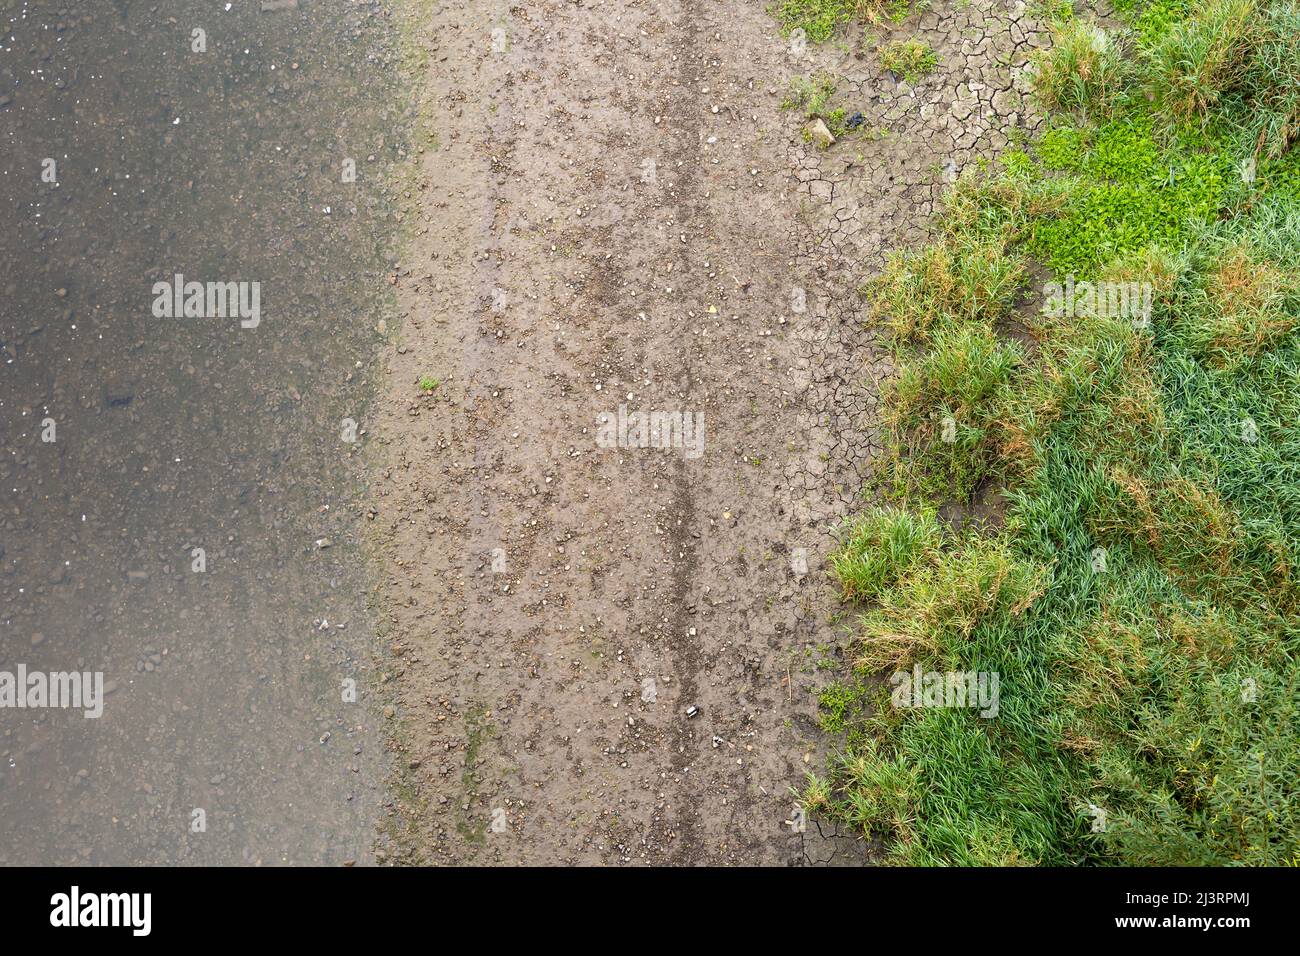 Blick von oben auf einen Fluss und ein Flussufer. Nasser Schmutz, kleine Steine und grünes Gras sind sichtbar. Das Wasser ist klar und unter Wasser sind Steine sichtbar. Stockfoto